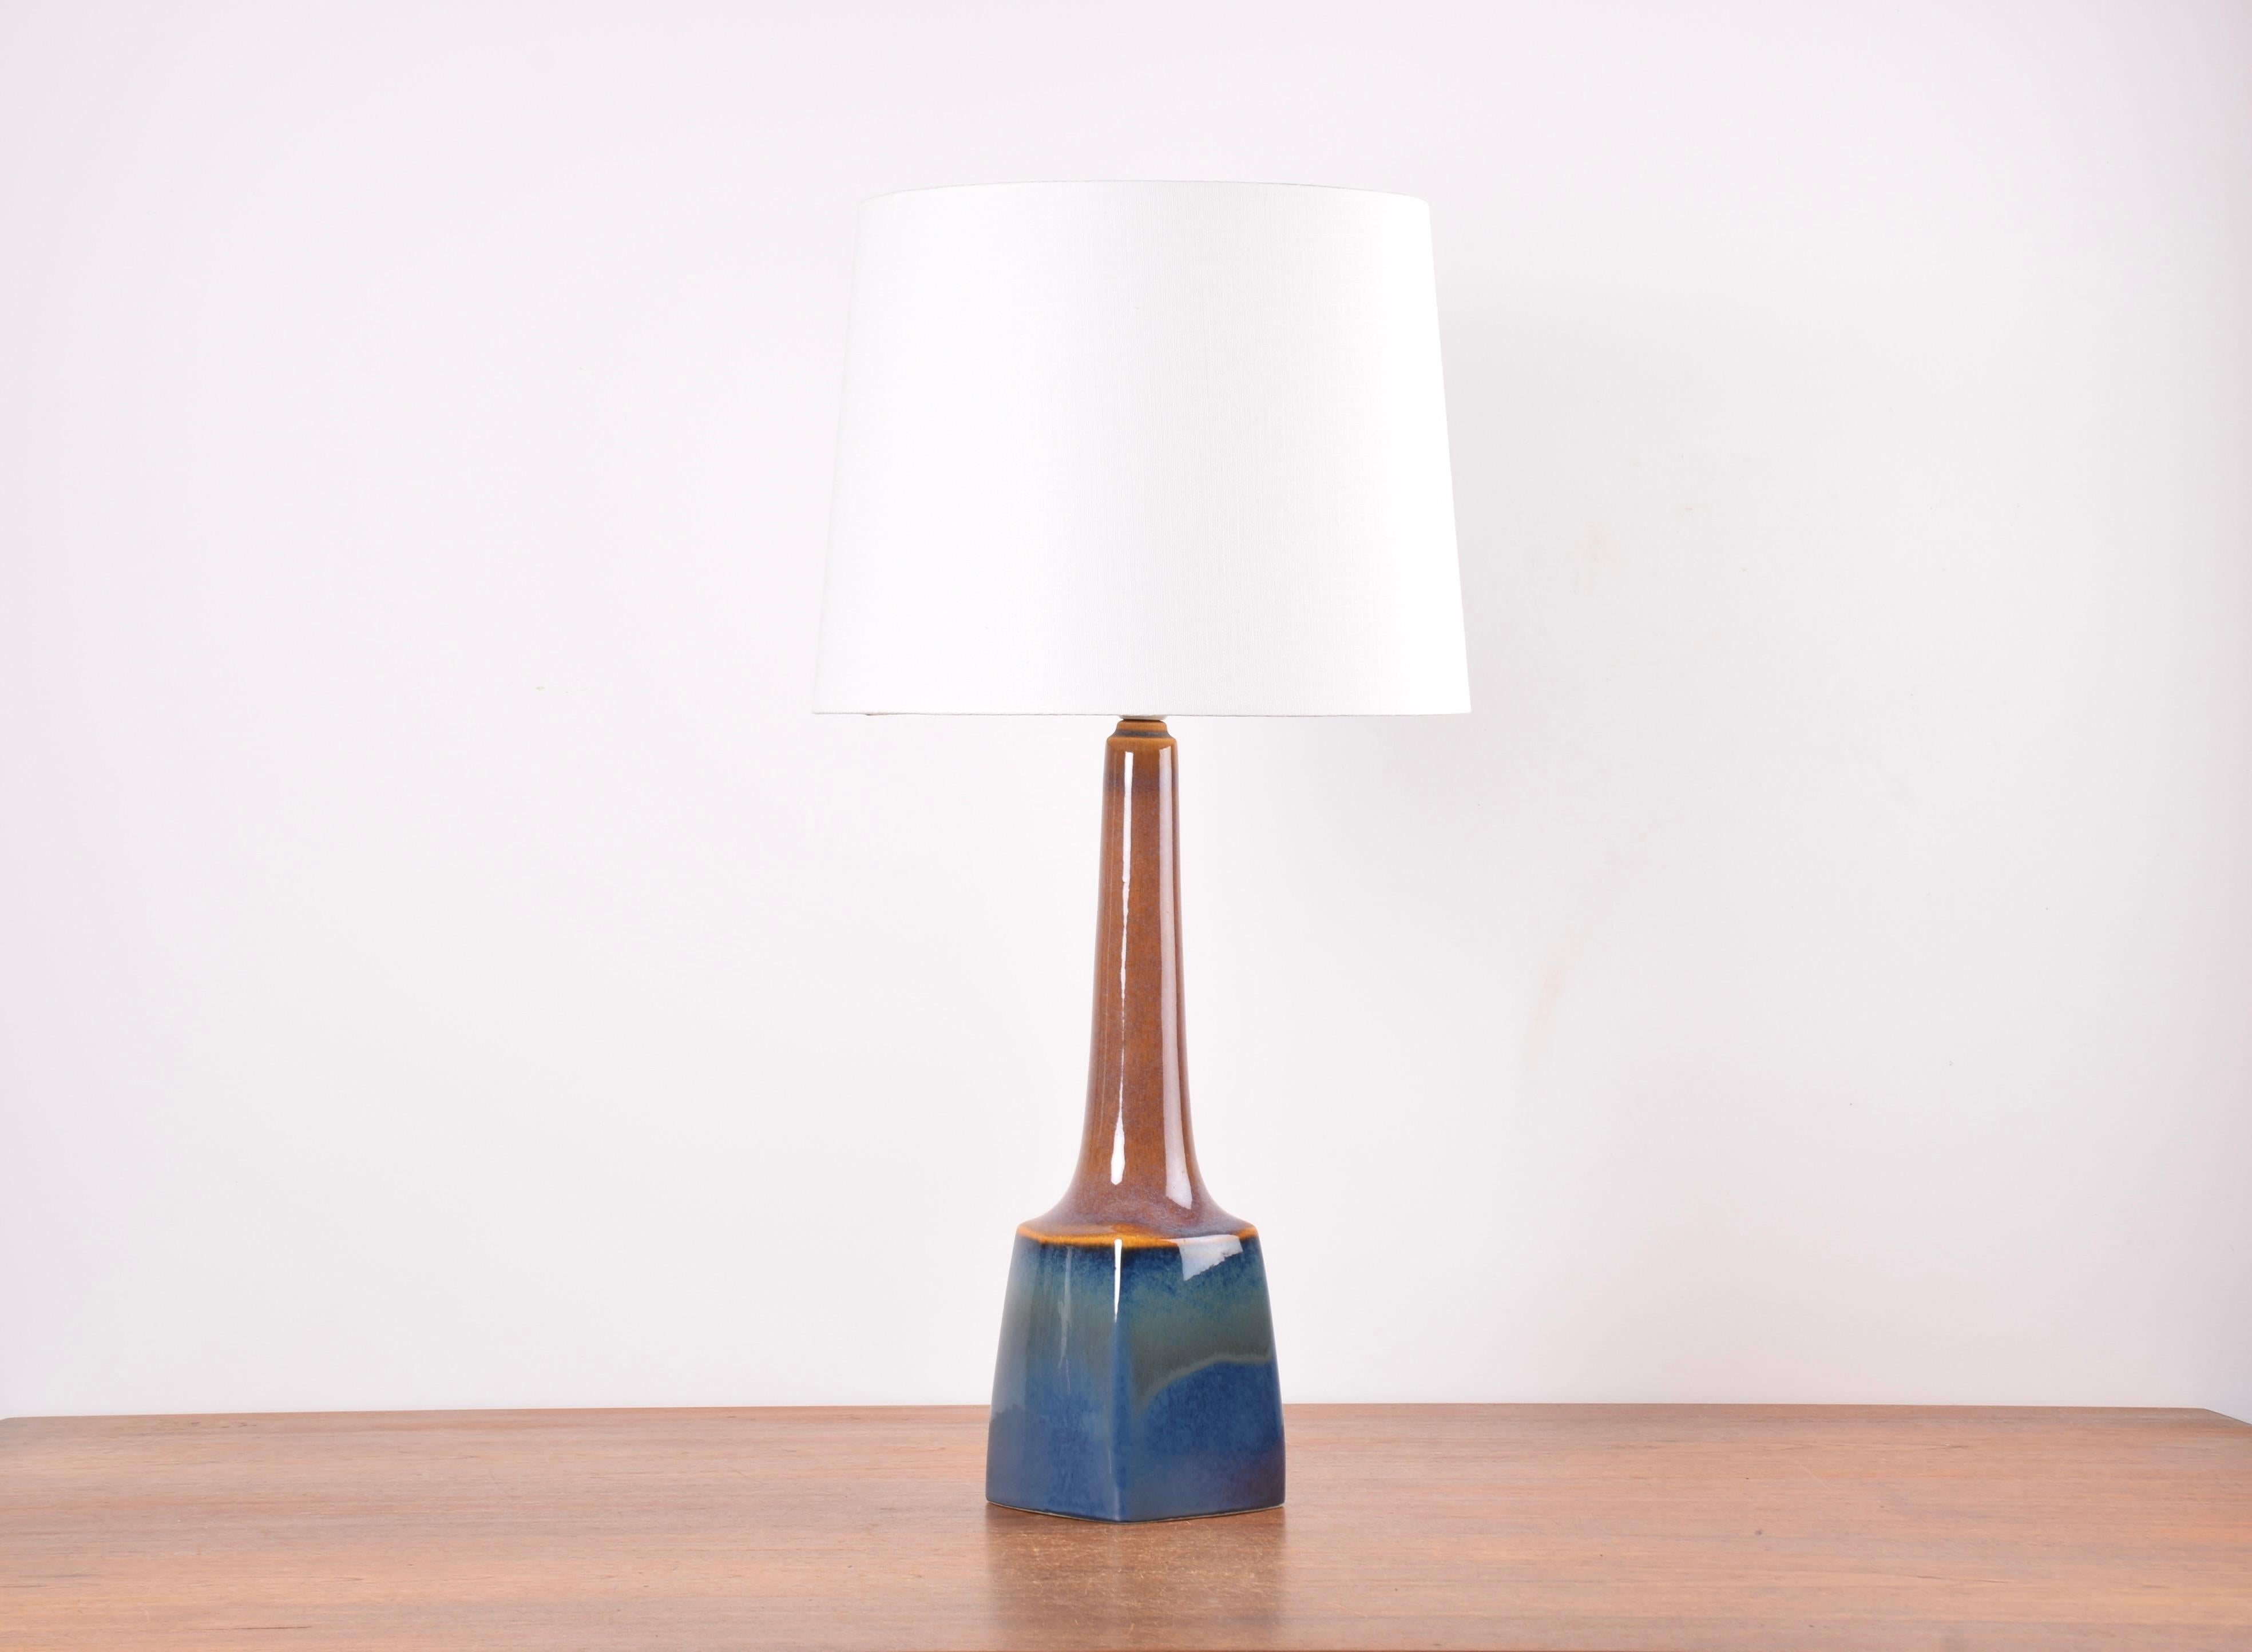 Hohe Tischlampe aus Keramik von Søholm Stentøj, Dänemark.
Hergestellt in den 1960er Jahren.

Schöner Wechsel der Glasurfarben von Karamellbraun über Violett bis Blau.

Im Lieferumfang enthalten ist ein neuer, in Dänemark entworfener und